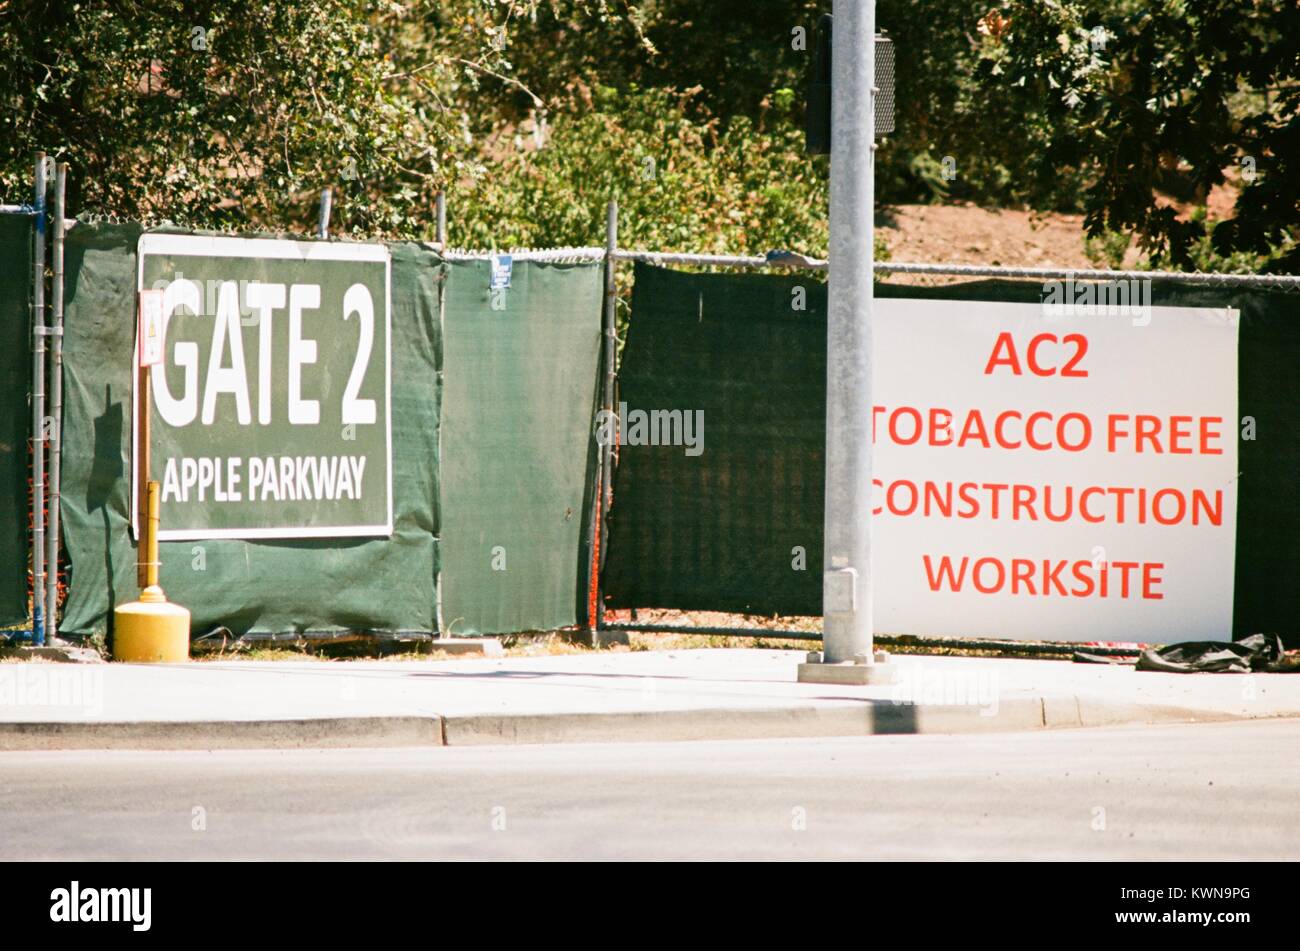 Entrée de la construction avec la signalisation sur la promenade d'Apple à l'Apple Park, connu familièrement comme "le vaisseau spatial", le nouveau quartier général d'Apple Inc dans la Silicon Valley ville de Cupertino, Californie, 25 juillet 2017. Banque D'Images